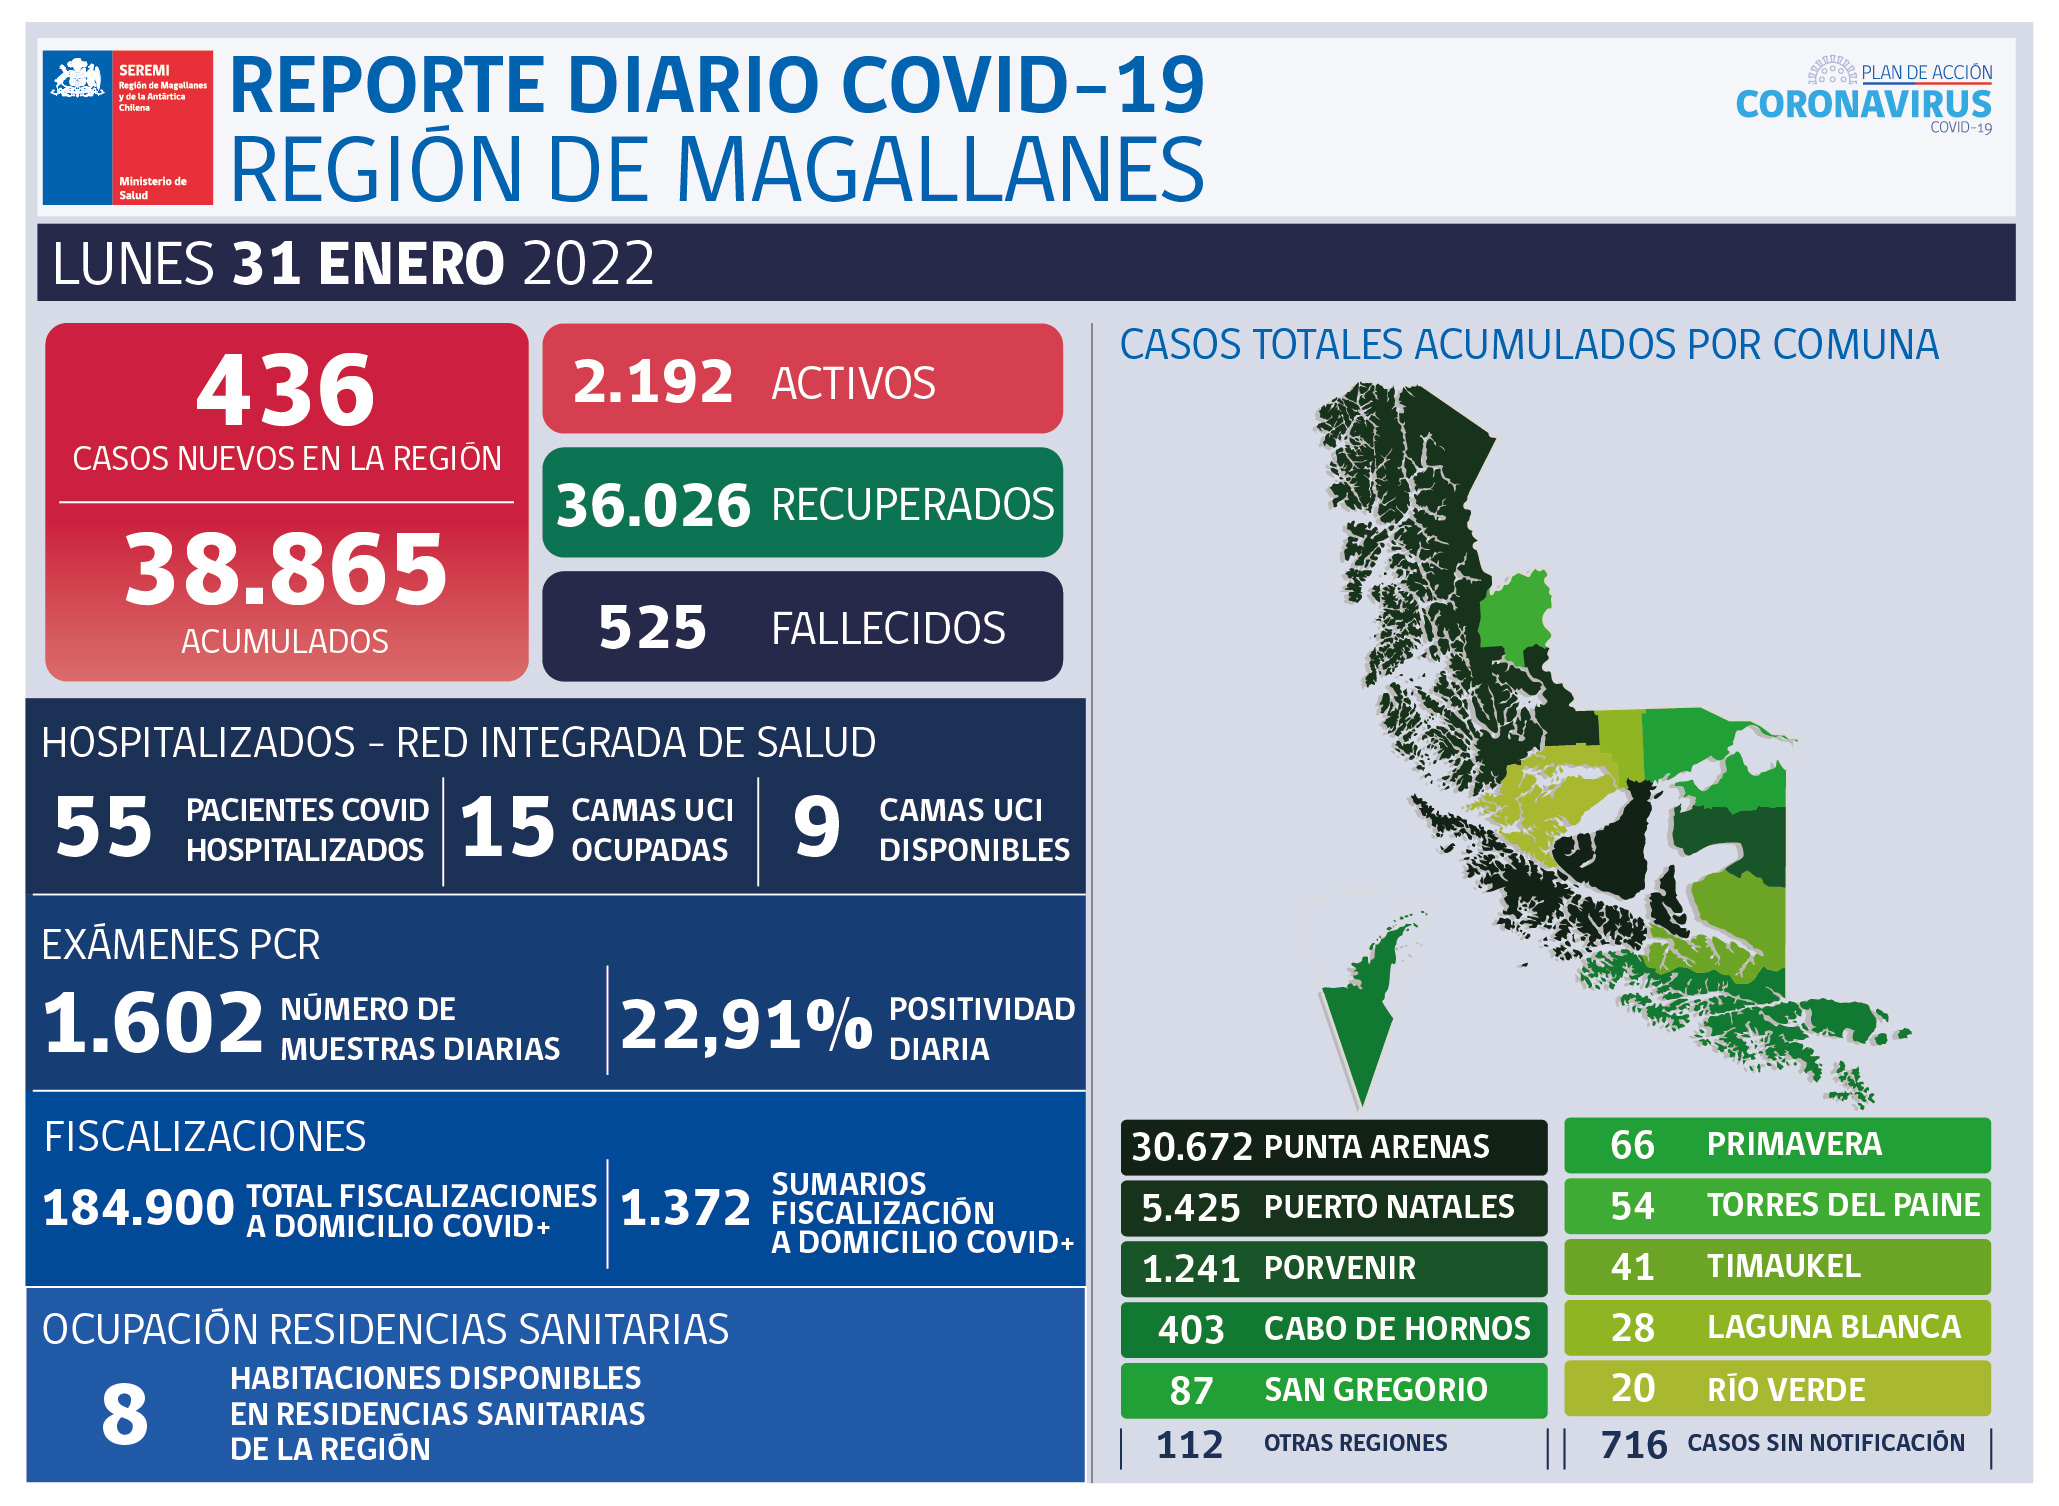 436 nuevos casos covid19 se registran hoy lunes 31 de enero en Magallanes